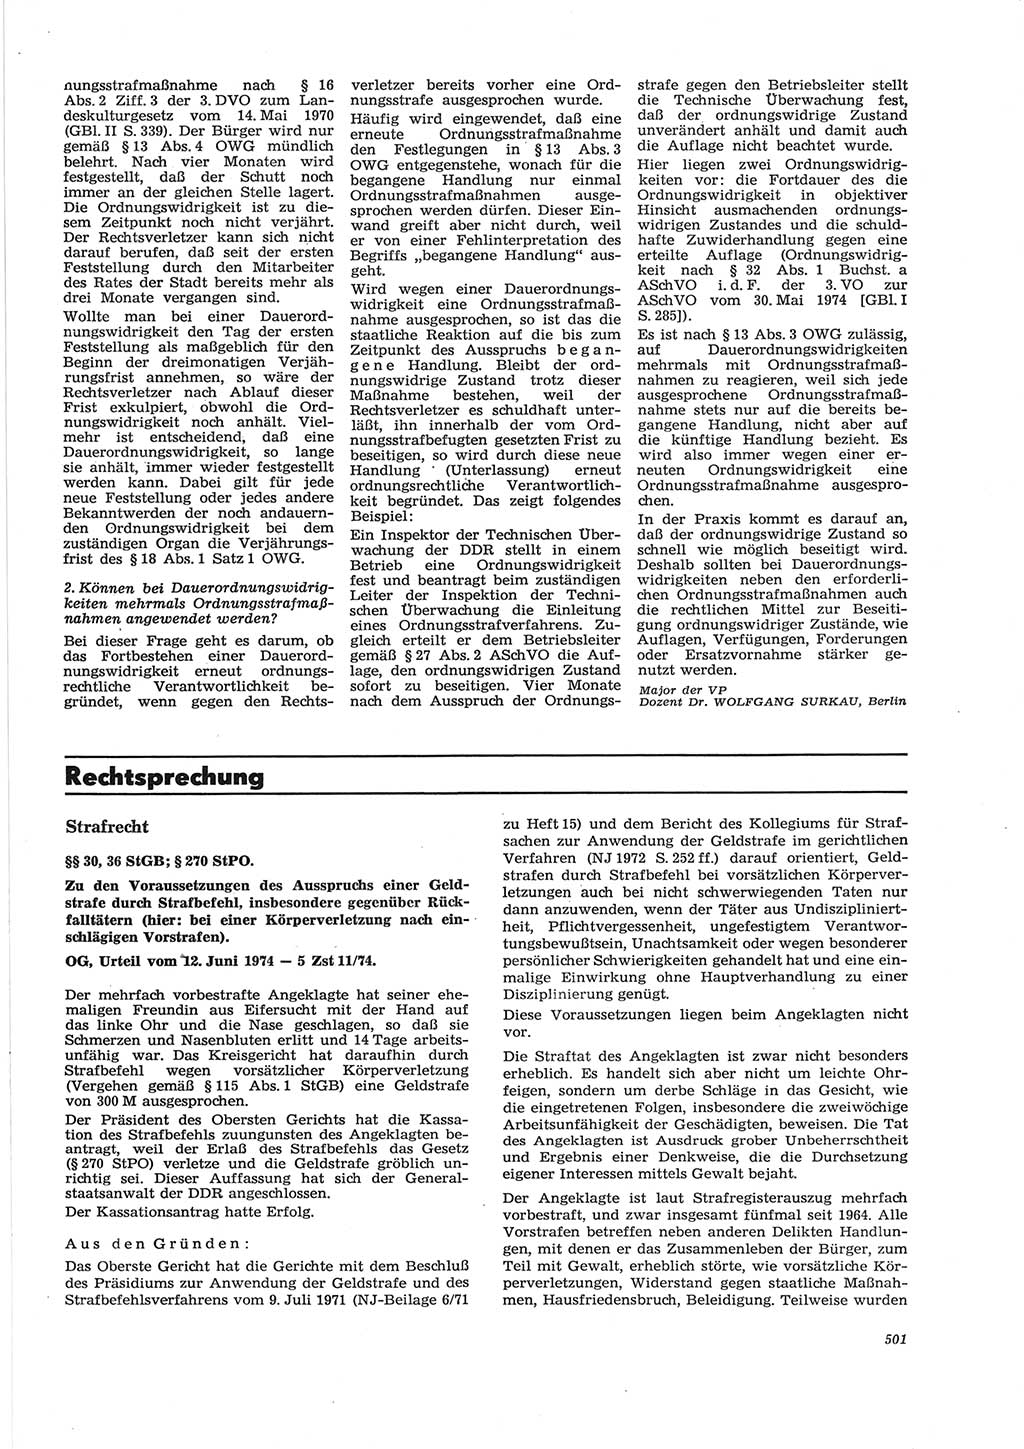 Neue Justiz (NJ), Zeitschrift für Recht und Rechtswissenschaft [Deutsche Demokratische Republik (DDR)], 28. Jahrgang 1974, Seite 501 (NJ DDR 1974, S. 501)